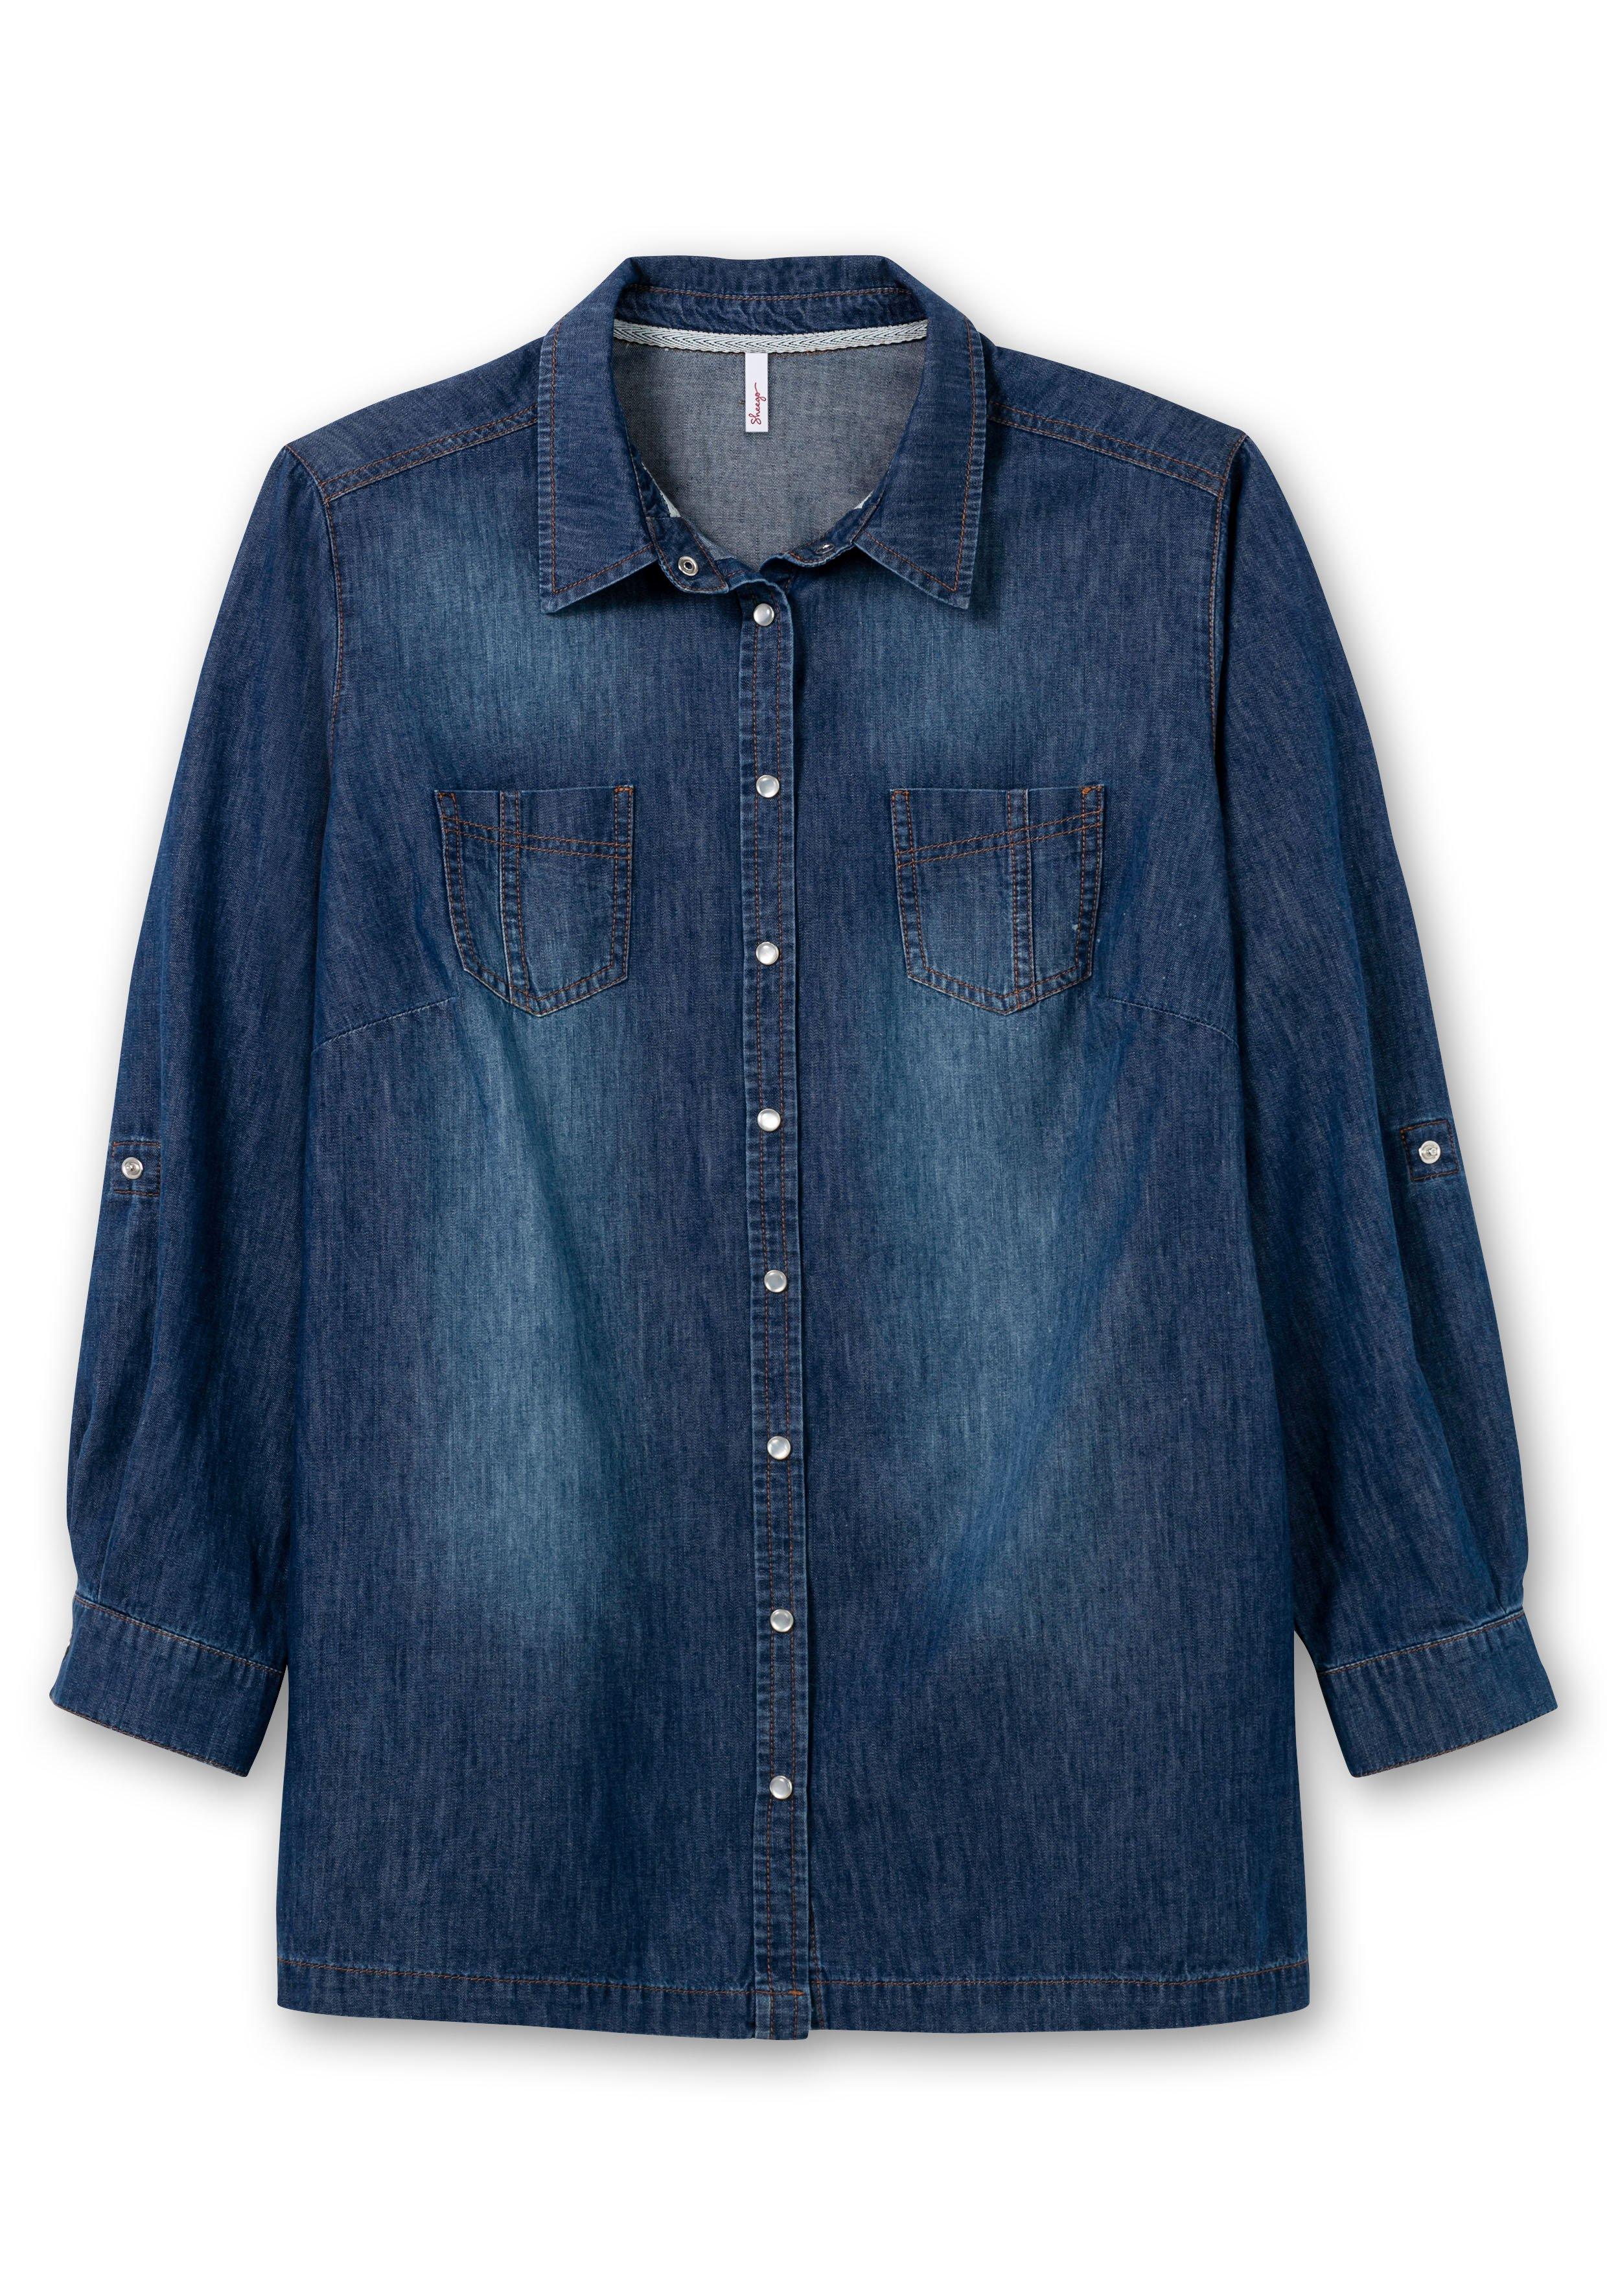 Jeansbluse mit krempelbaren Ärmeln - Denim sheego blue 